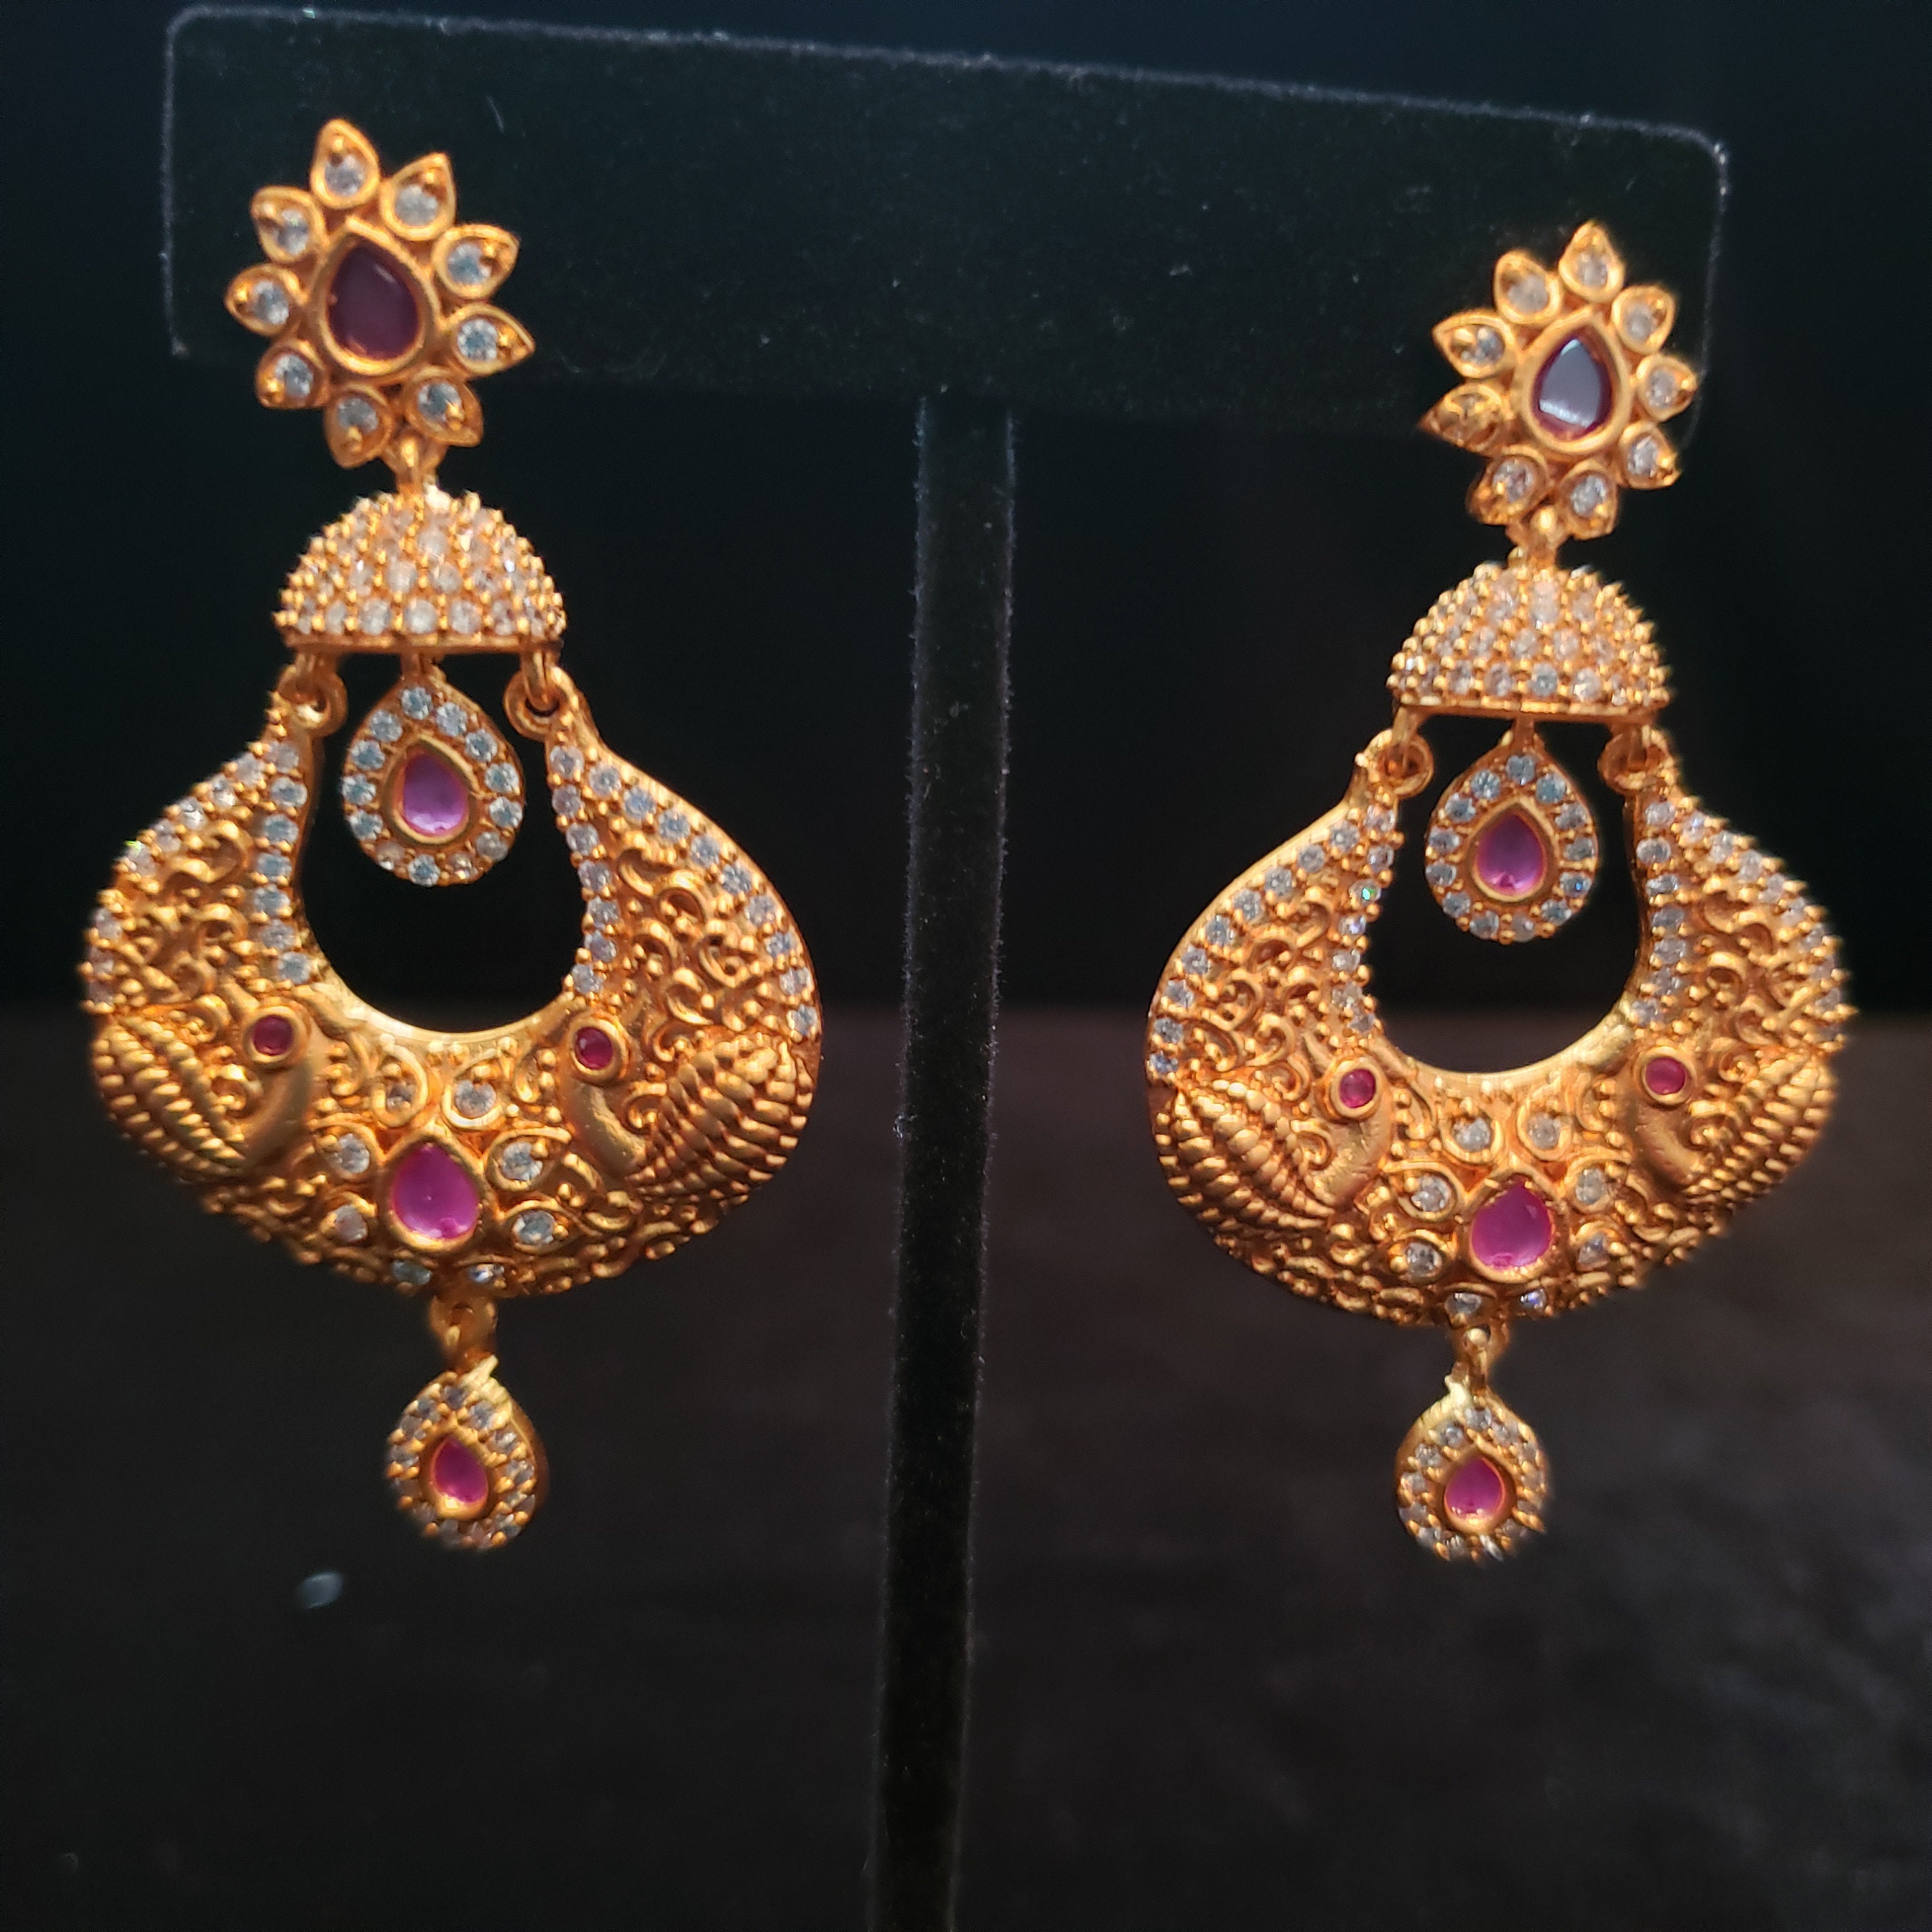 Buttalu | Gold earrings models, Gold earrings designs, Online gold jewellery